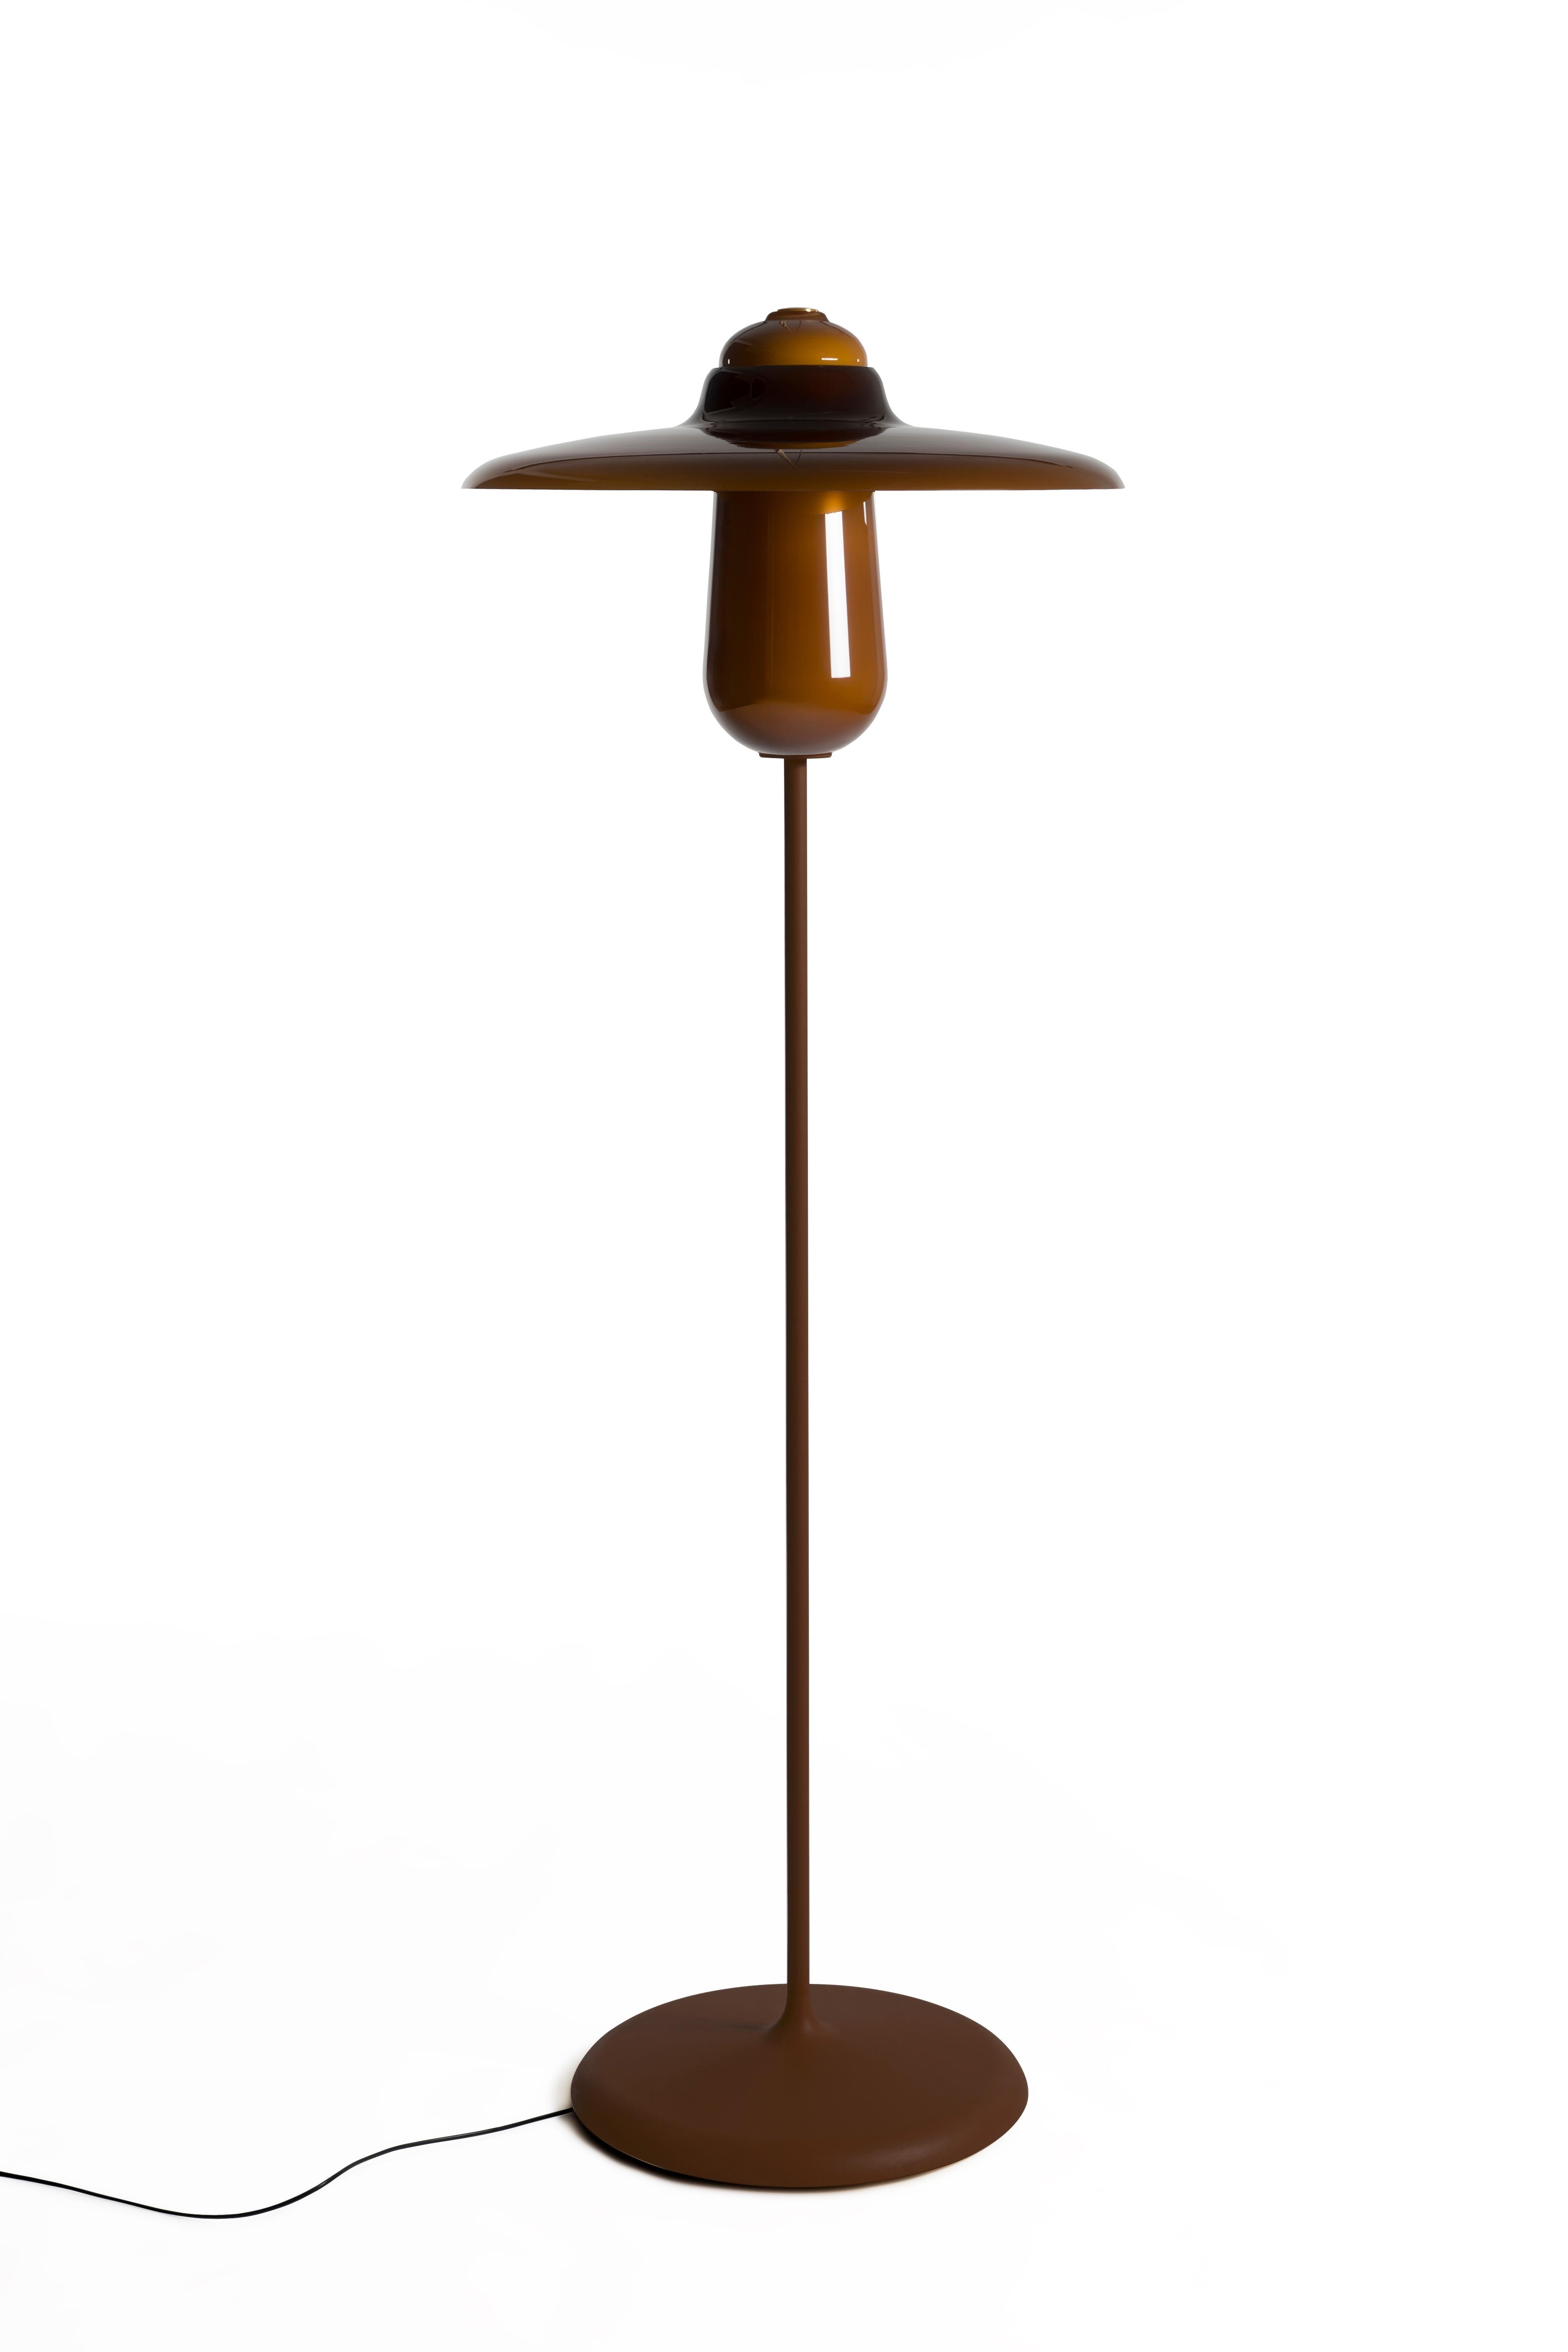 Plancher révisé d'Ovington
Le lampadaire Ovington est un complément élégant à tout intérieur. Le lampadaire Ovington dégage un rayonnement et une chaleur accueillants, qu'il soit allumé ou éteint. Le lampadaire Ovington est fabriqué en verre italien